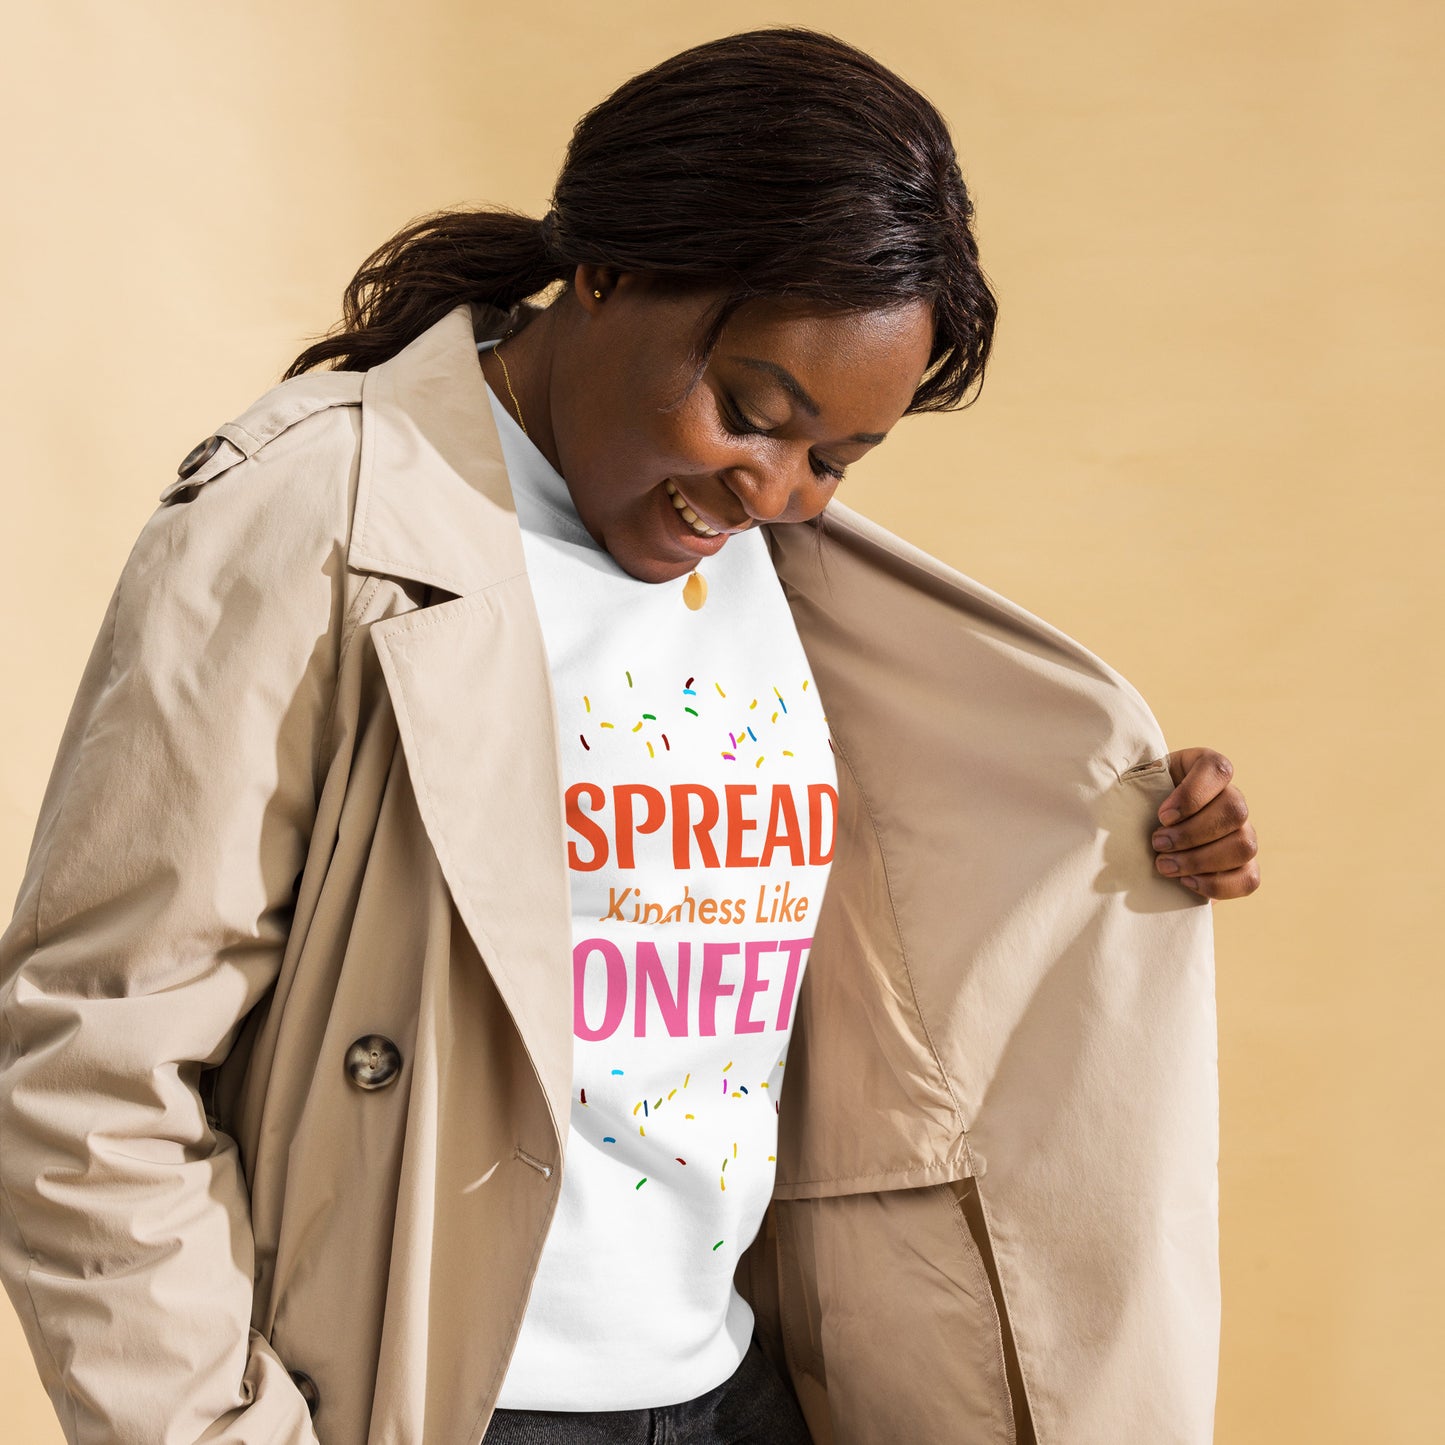 Spread Kindness Like Confetti Women's Premium Sweatshirt – Inspire Joy and Positivity Sweatshirt, Women's Fleece Lined Sweatshirt